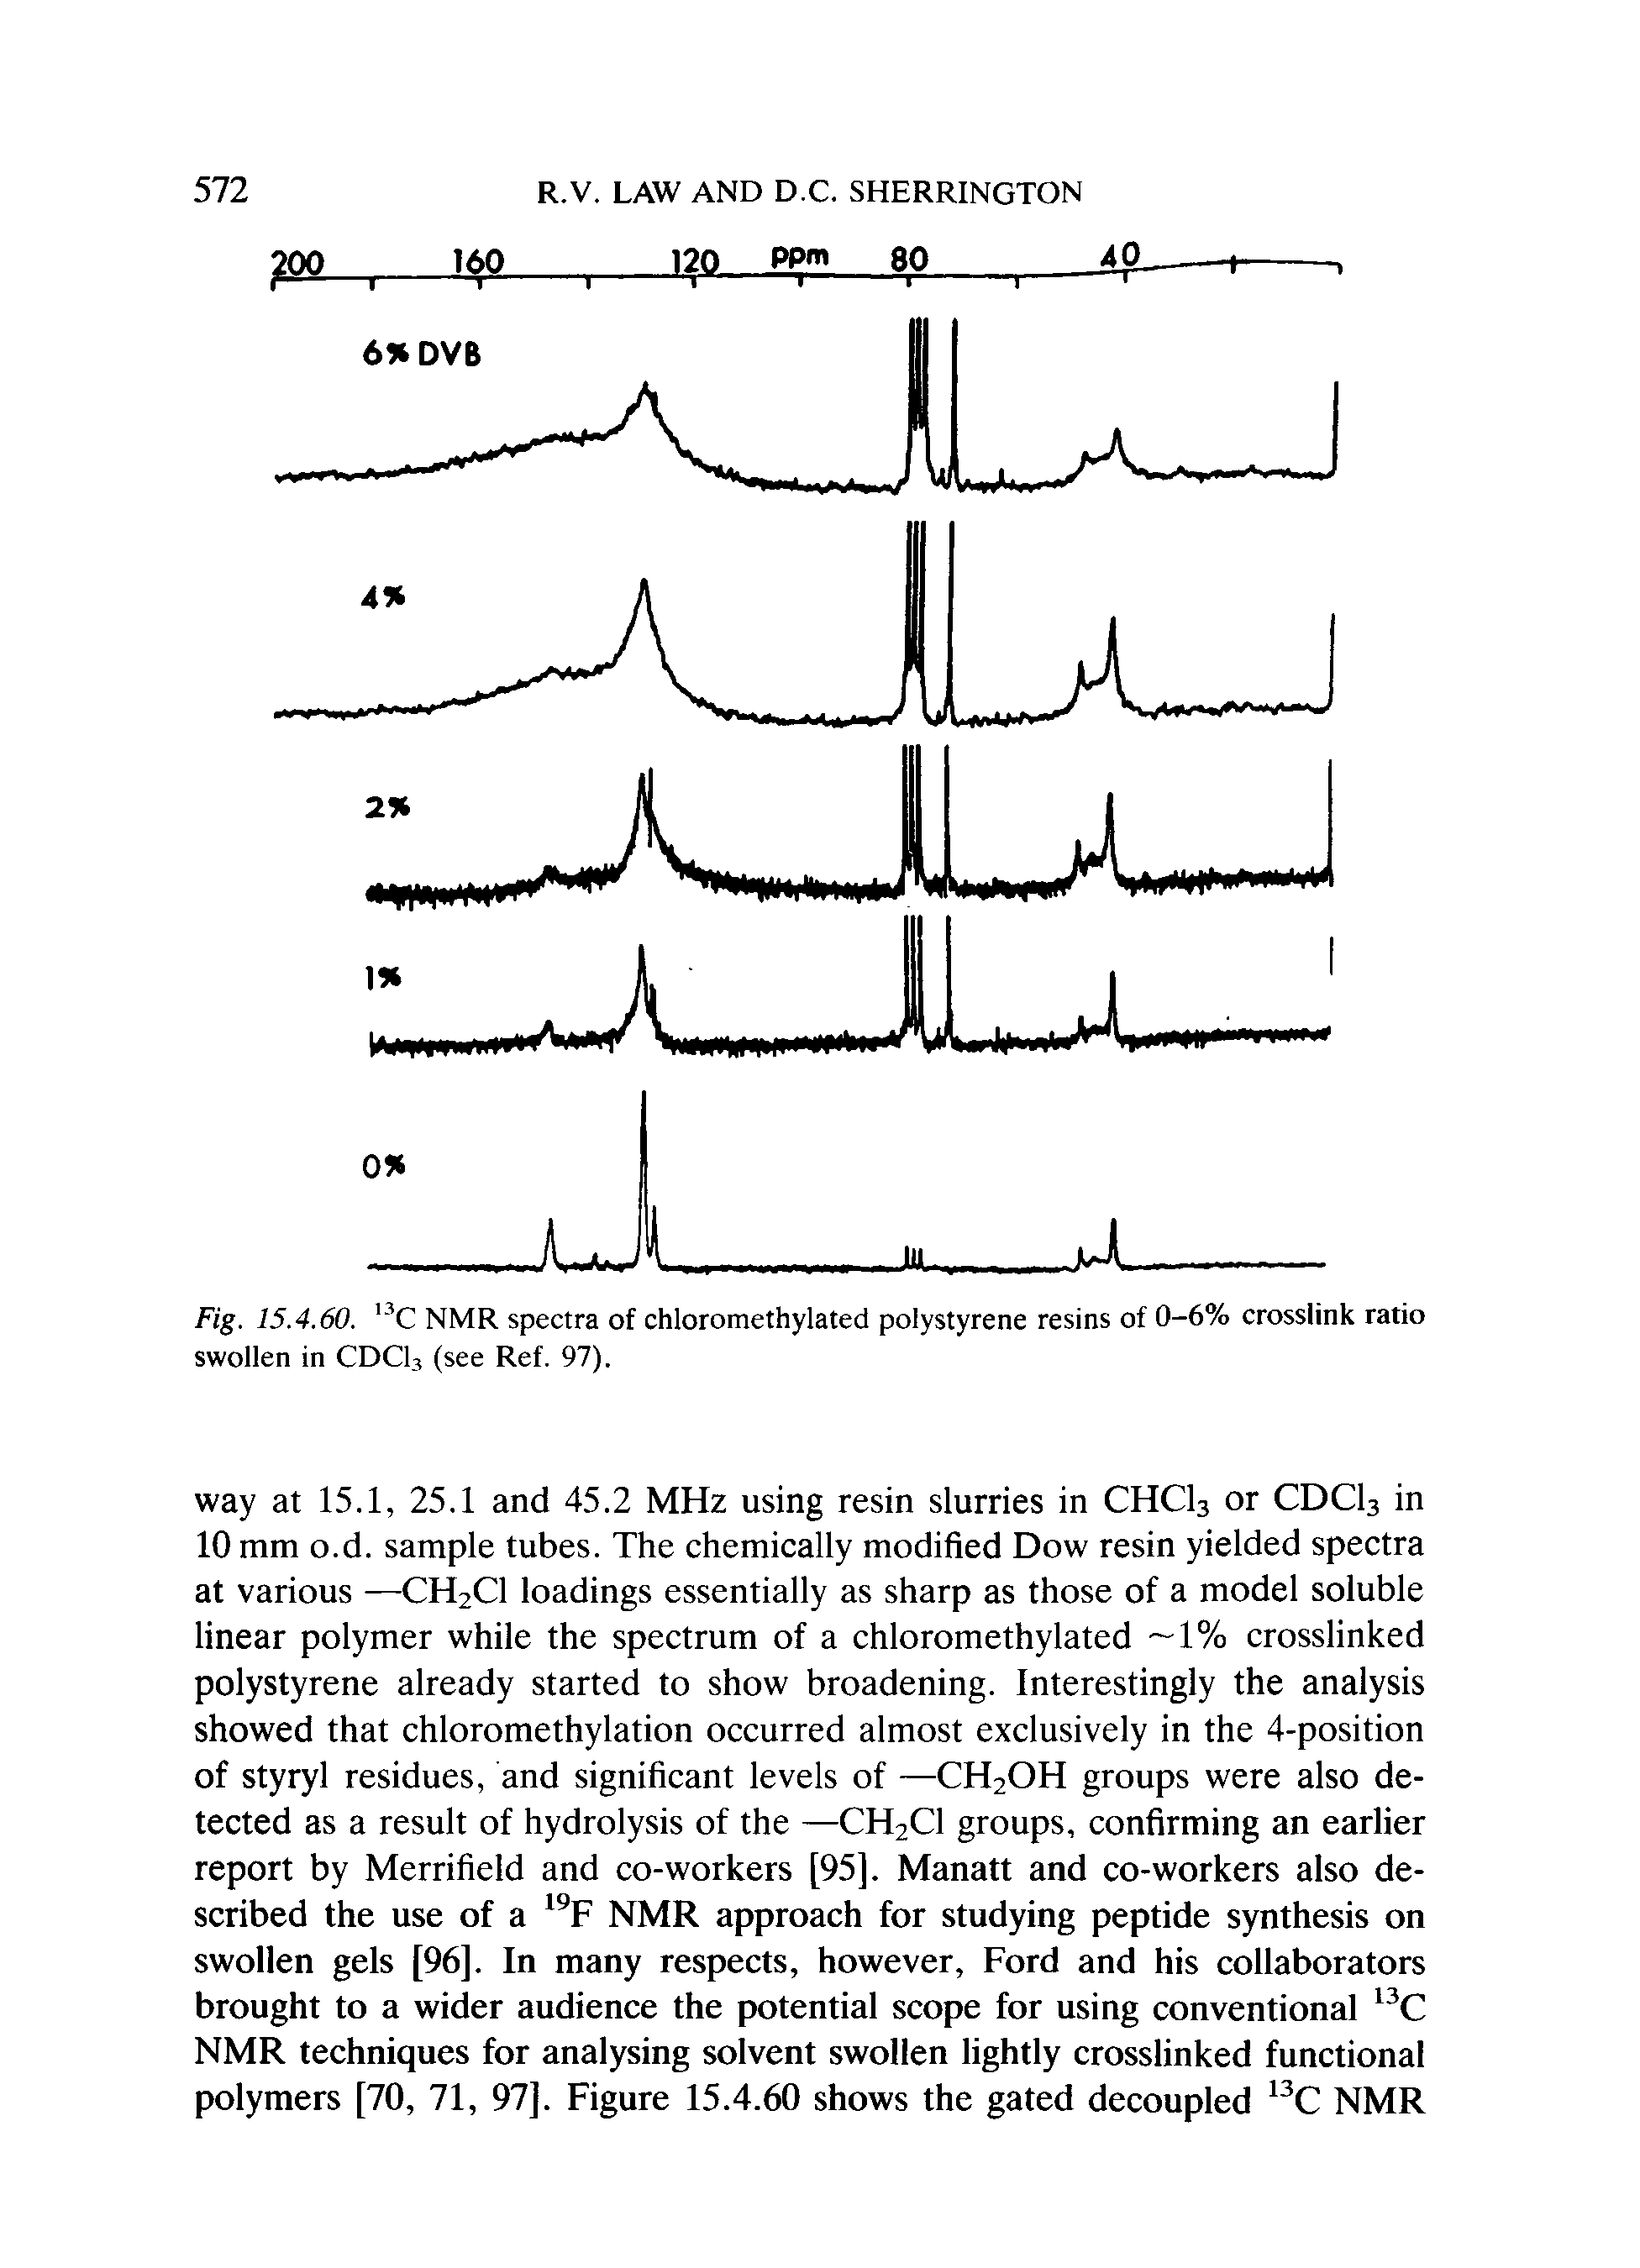 Fig. 15.4.60. C NMR spectra of chloromethylated polystyrene resins of 0-6% crosslink ratio swollen in CDCI3 (see Ref. 97).